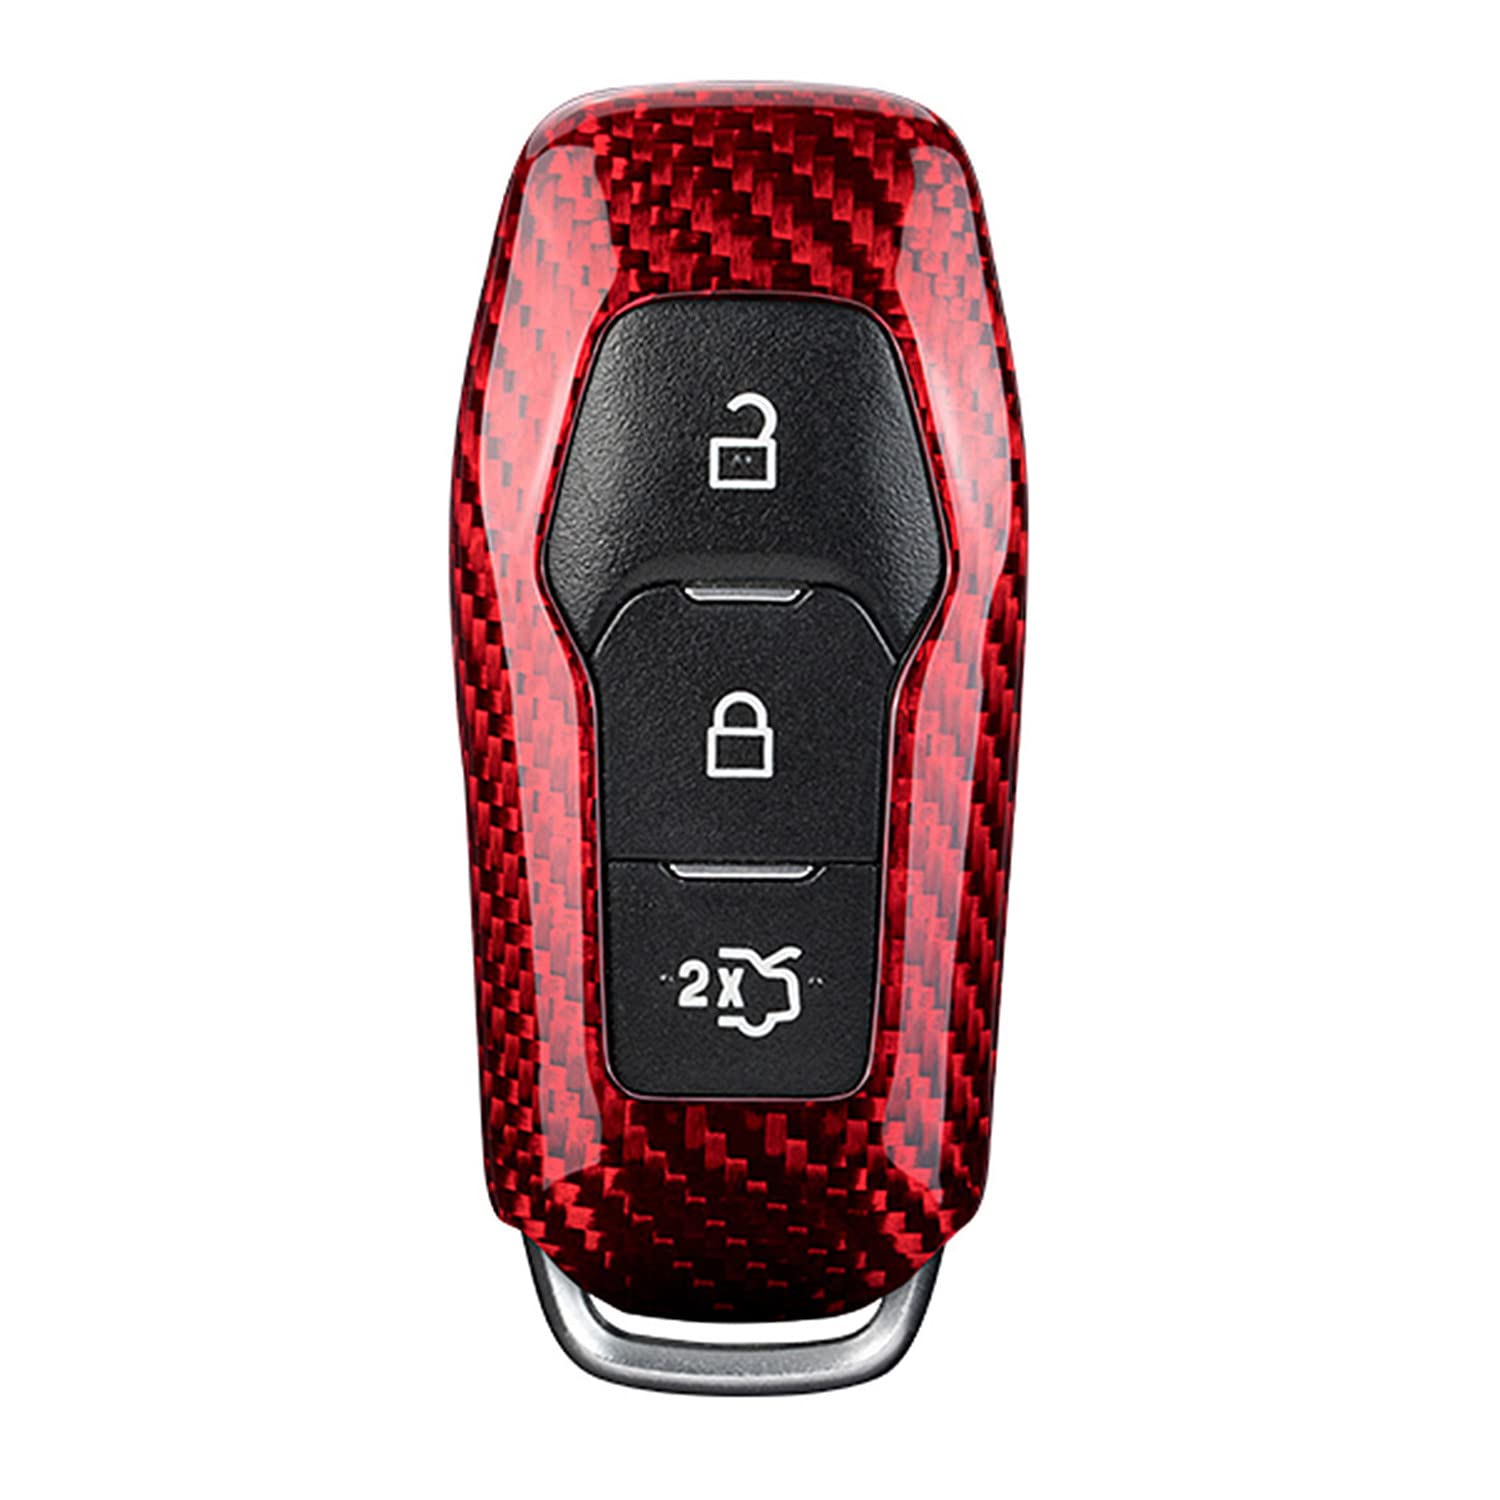 M.JVisun Echte Kohlefaser Abdeckung Fall Für Ford Mustang 2015 2016 Intelligent Auto Schlüssel Schlüsselanhänger - Für Mustang Logo - 3 Tasten - Rot von M.JVisun